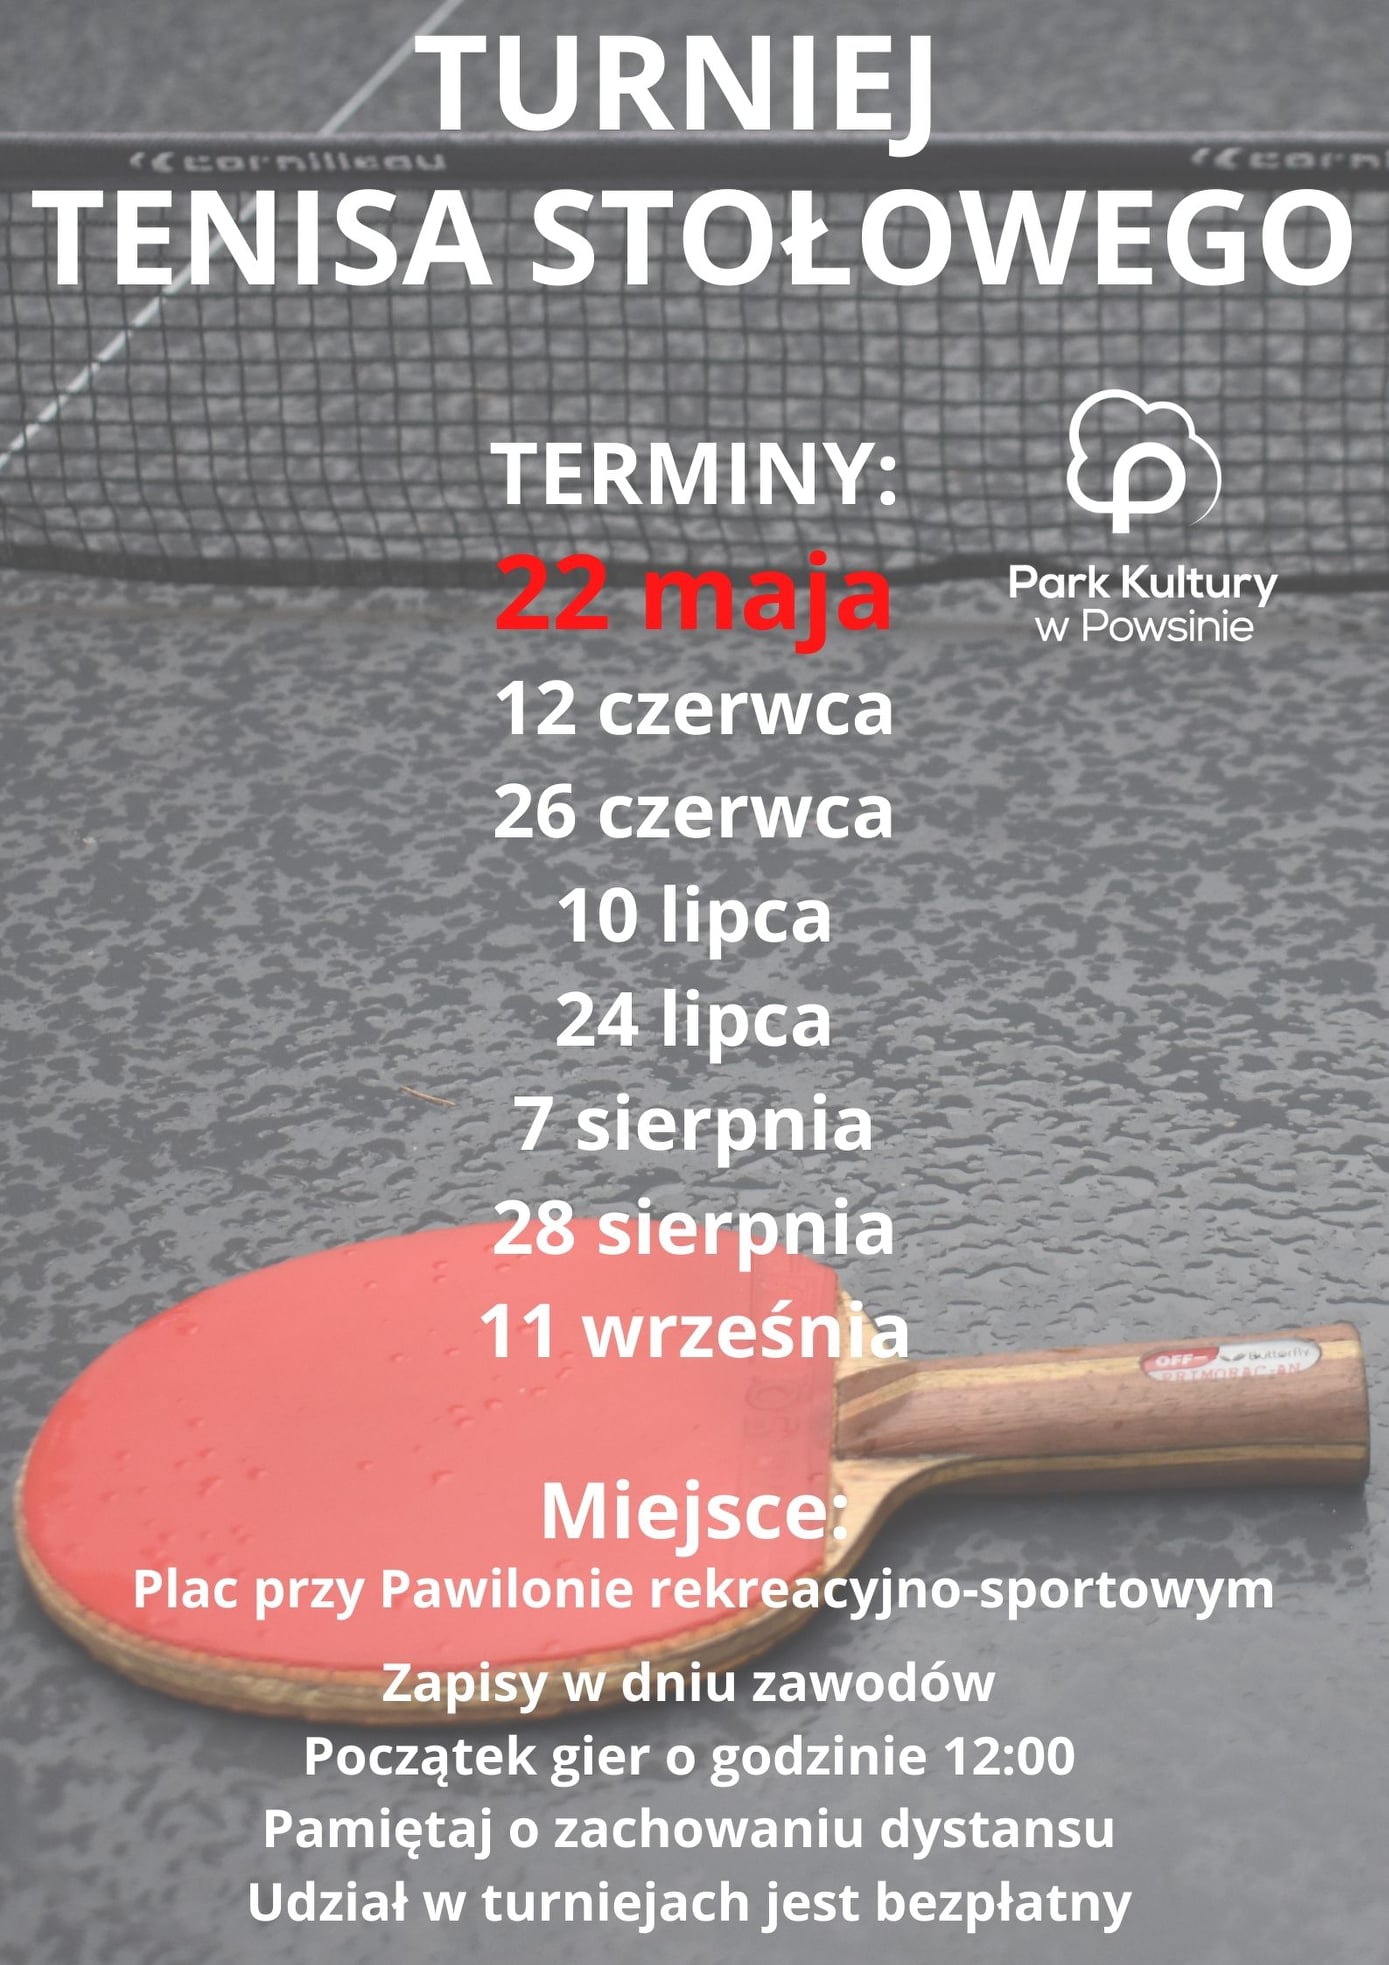 Plakat turnieju Cykl turniejów w tenisie stołowym w Parku Kultury w Powsinie 2021 - 5 termin